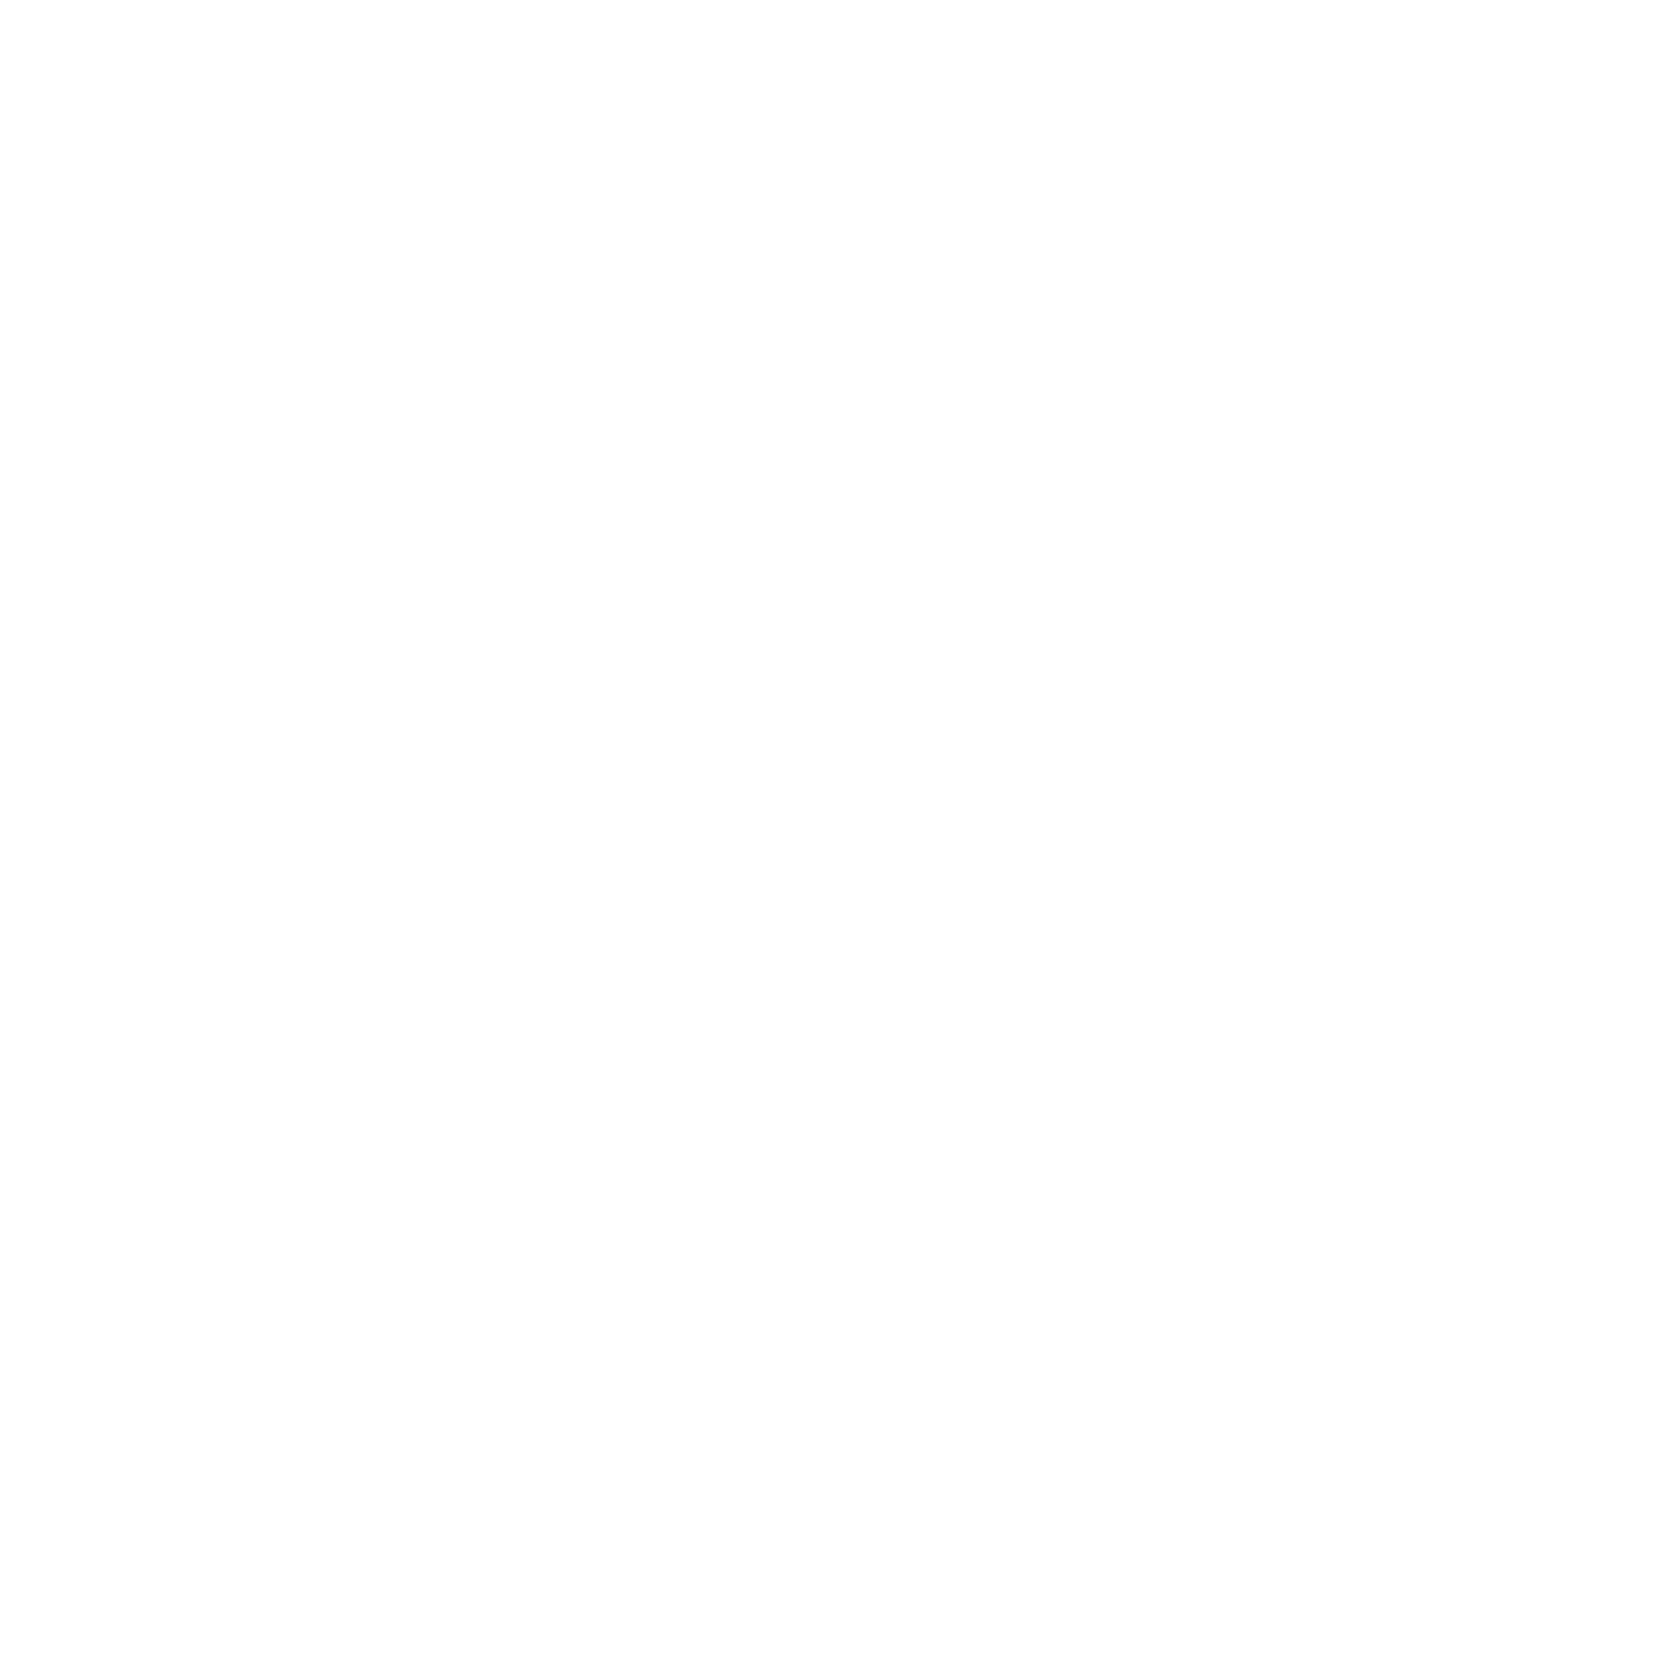 Skybricks